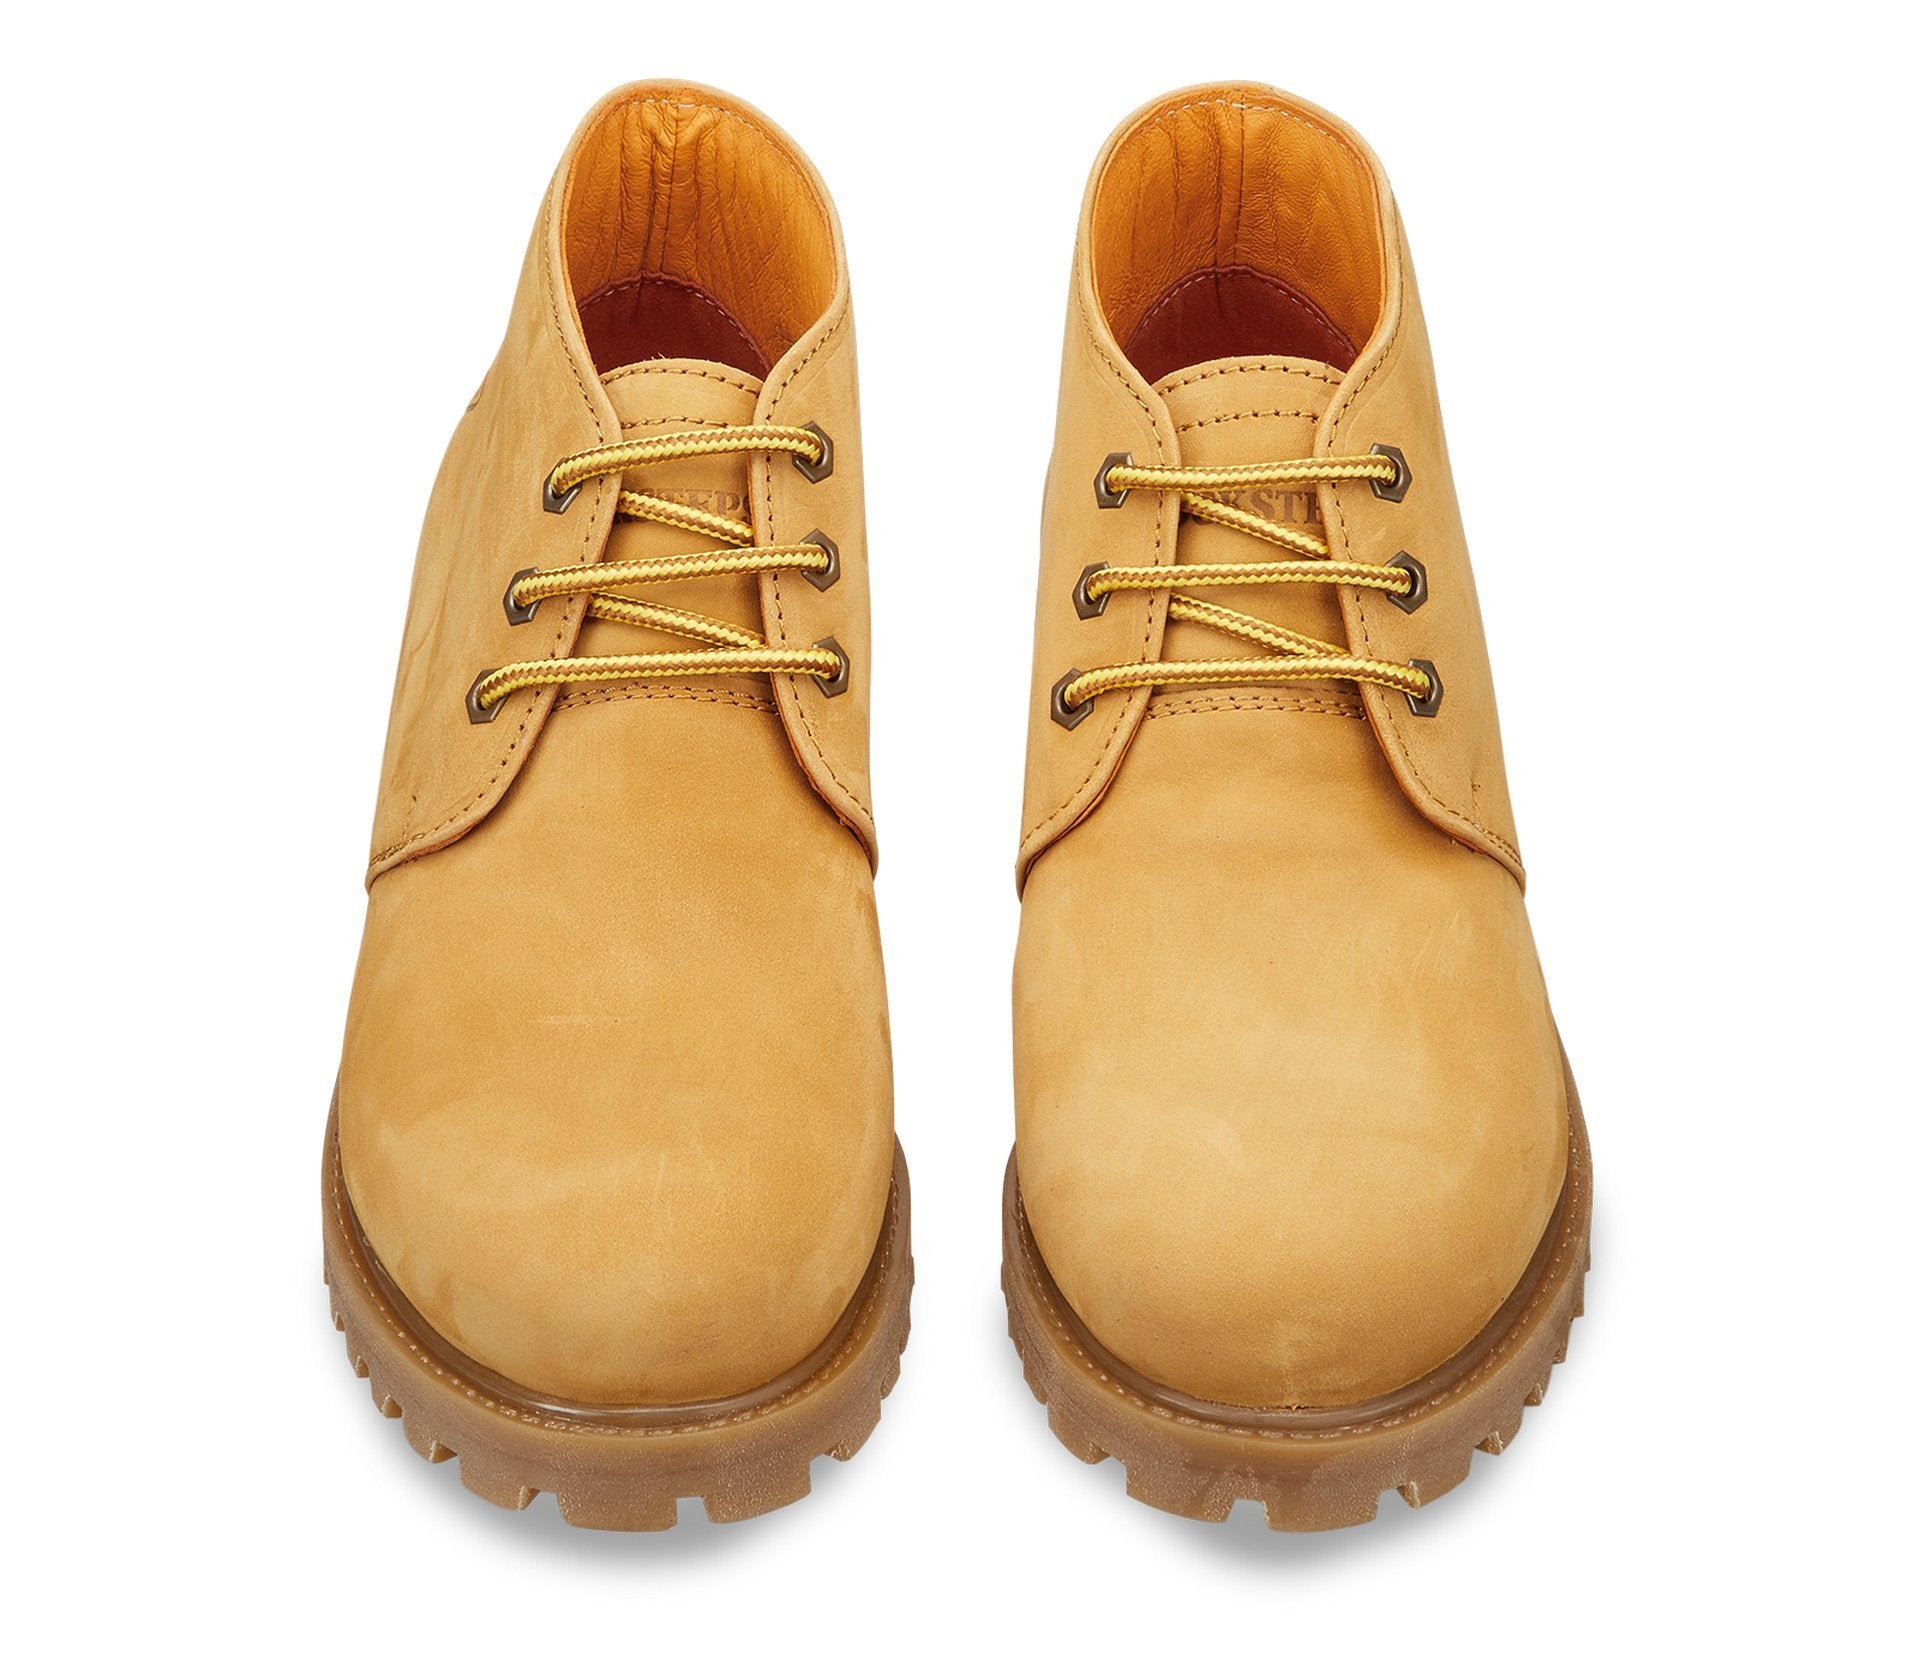 Men's Waterproof Boot Yellow